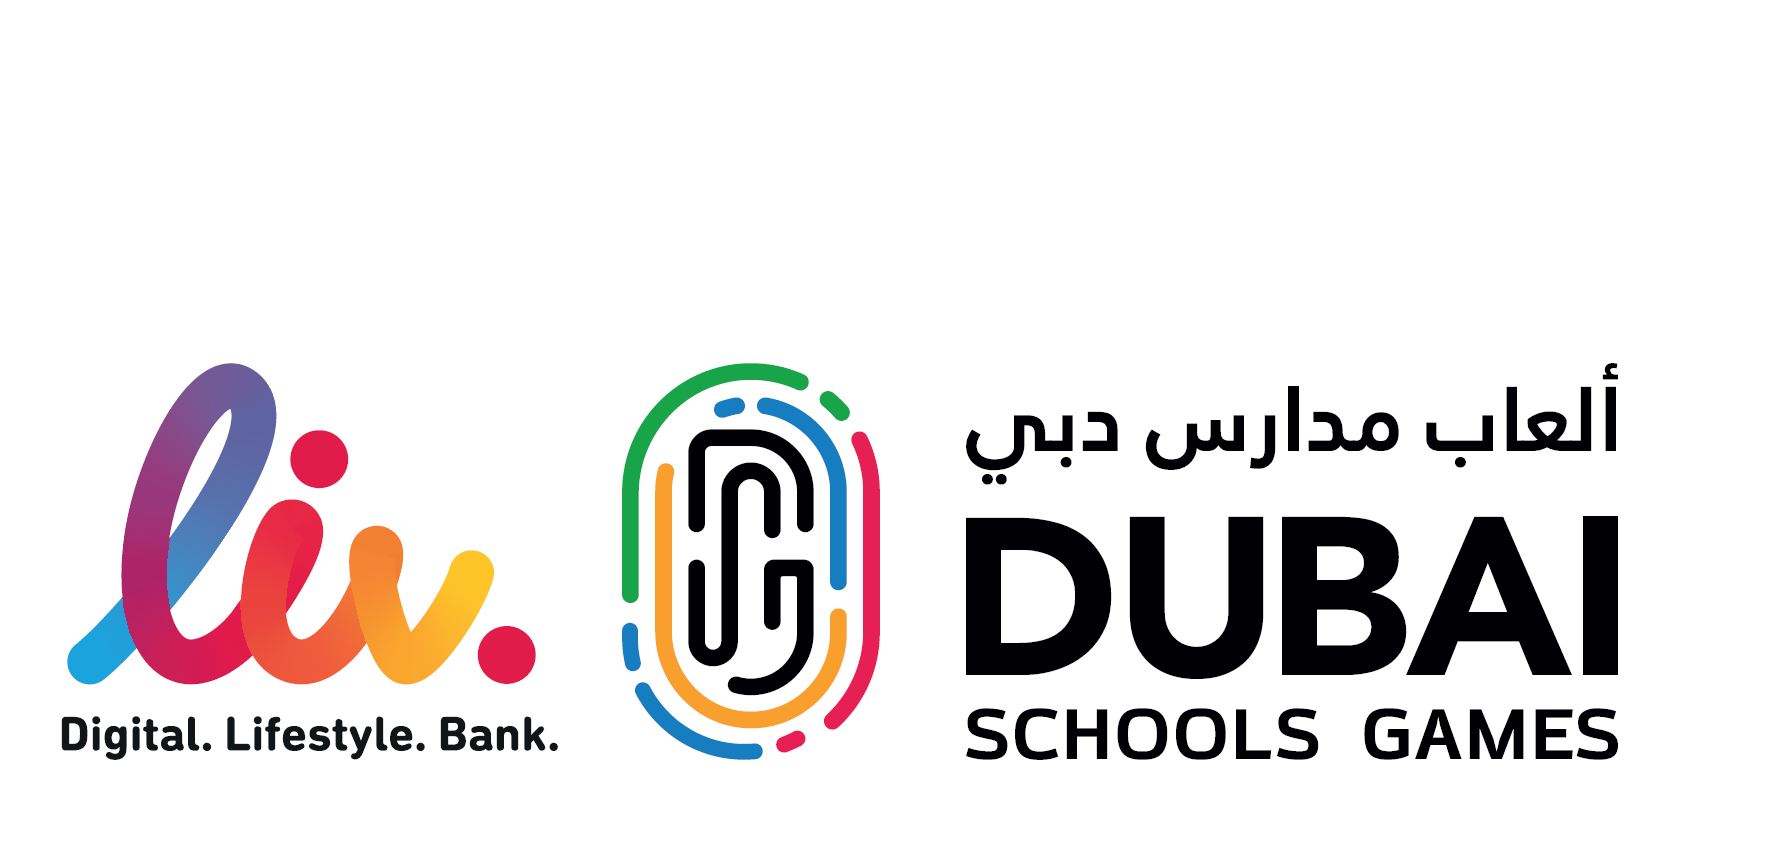 كتاب.  تعمل ألعاب مدارس دبي على تعزيز الصحة البدنية للشباب في دولة الإمارات العربية المتحدة من خلال الأحداث الرياضية ذات المستوى العالمي